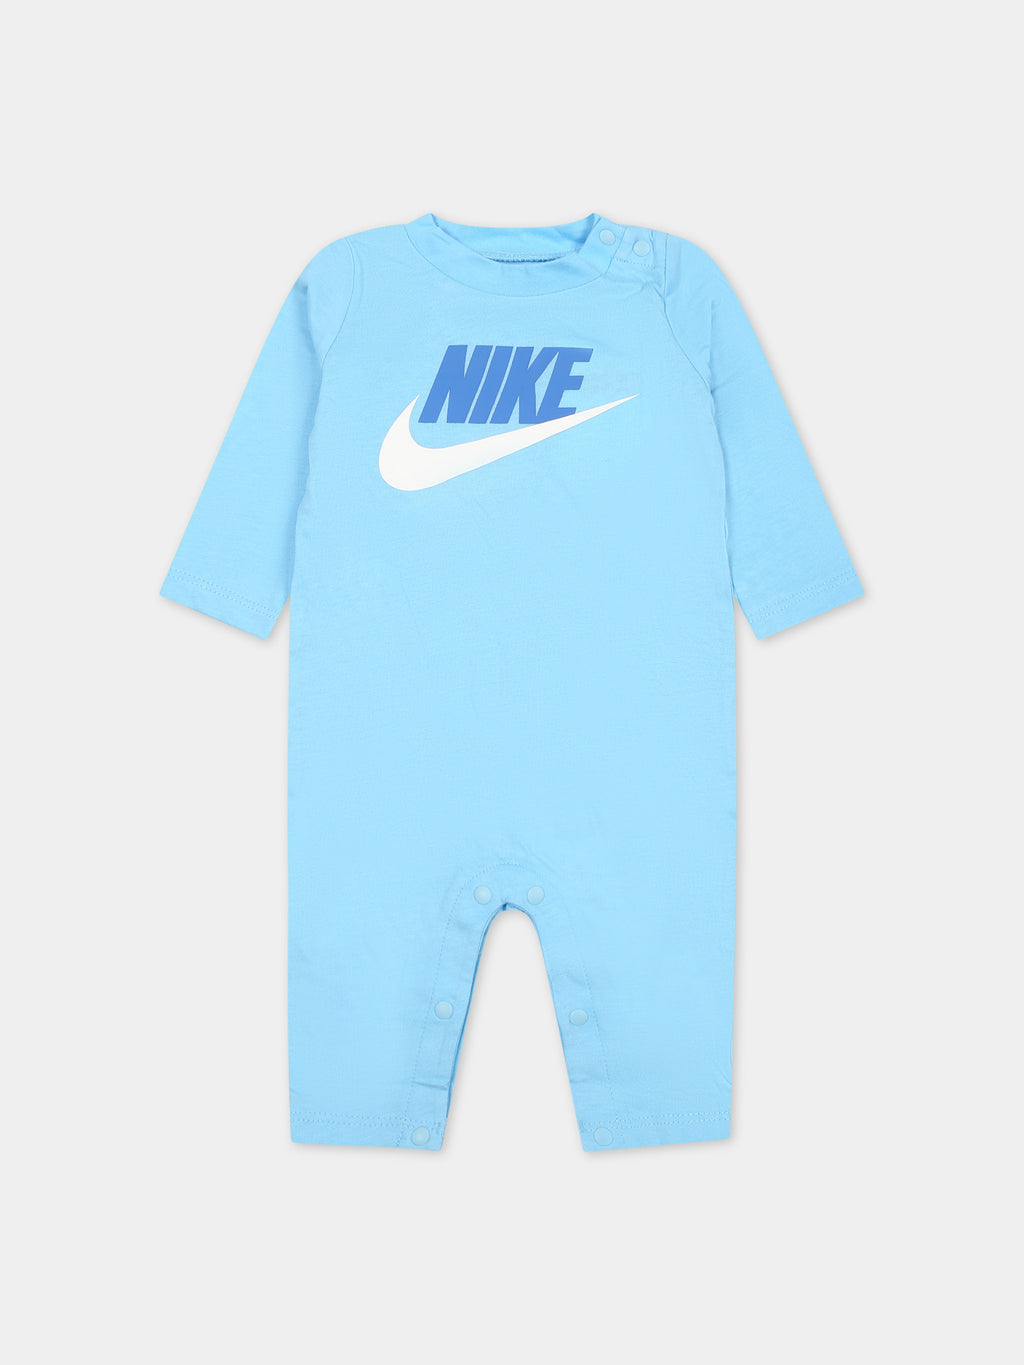 Grènouillère bleu ciel pour bébé garçon avec swoosh